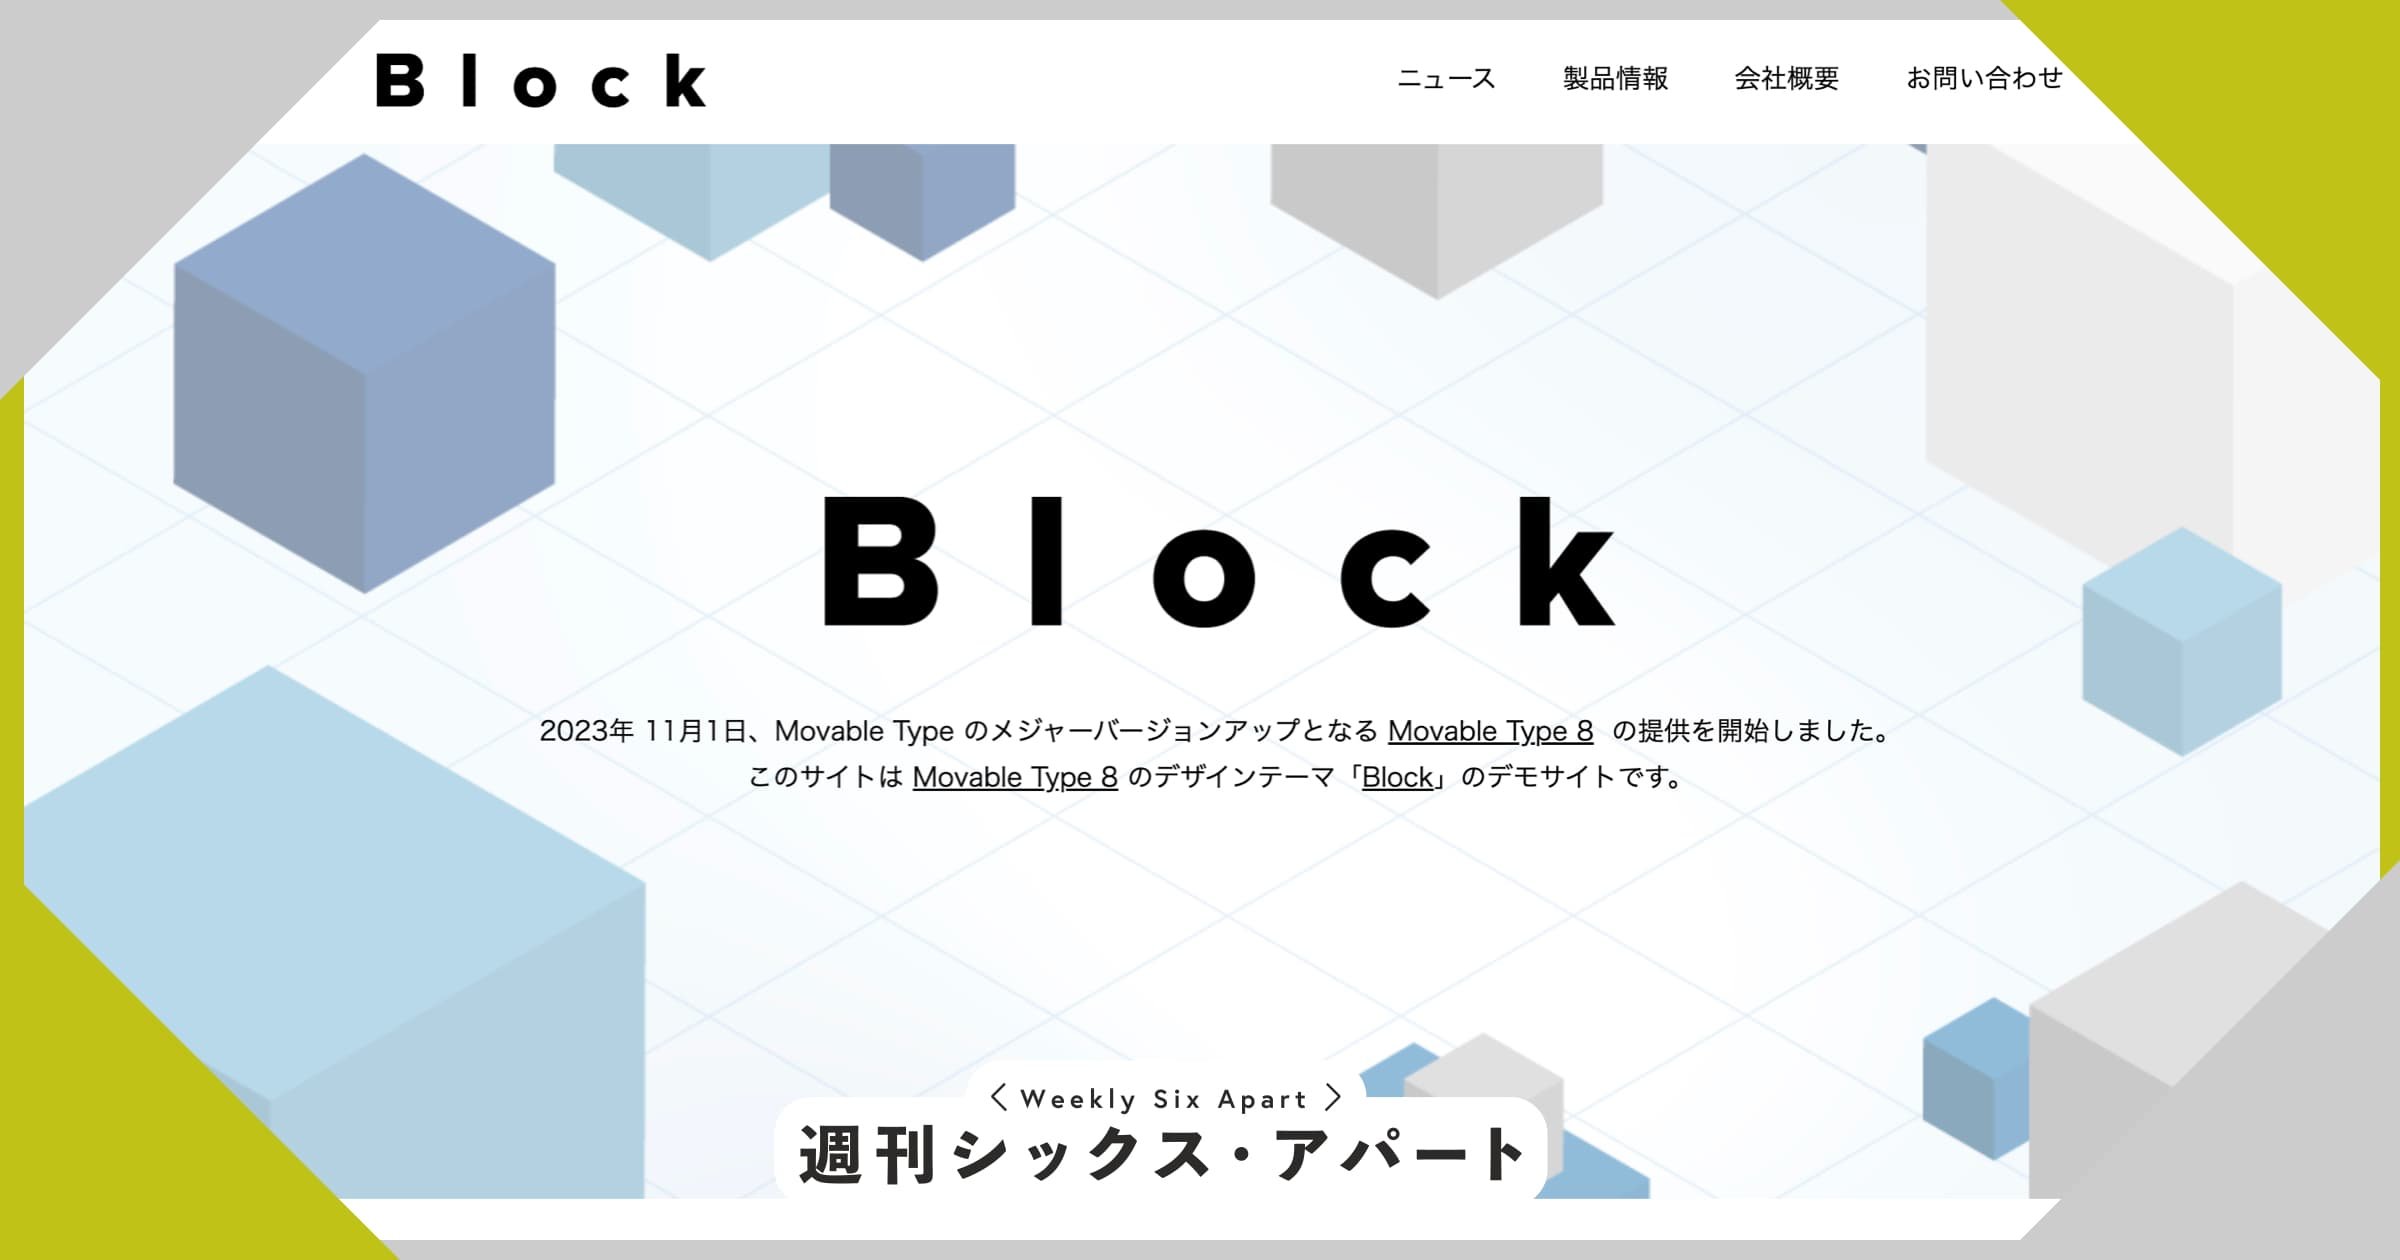 Movable Type 8 用新テーマ「Block」公開しました #週刊SA